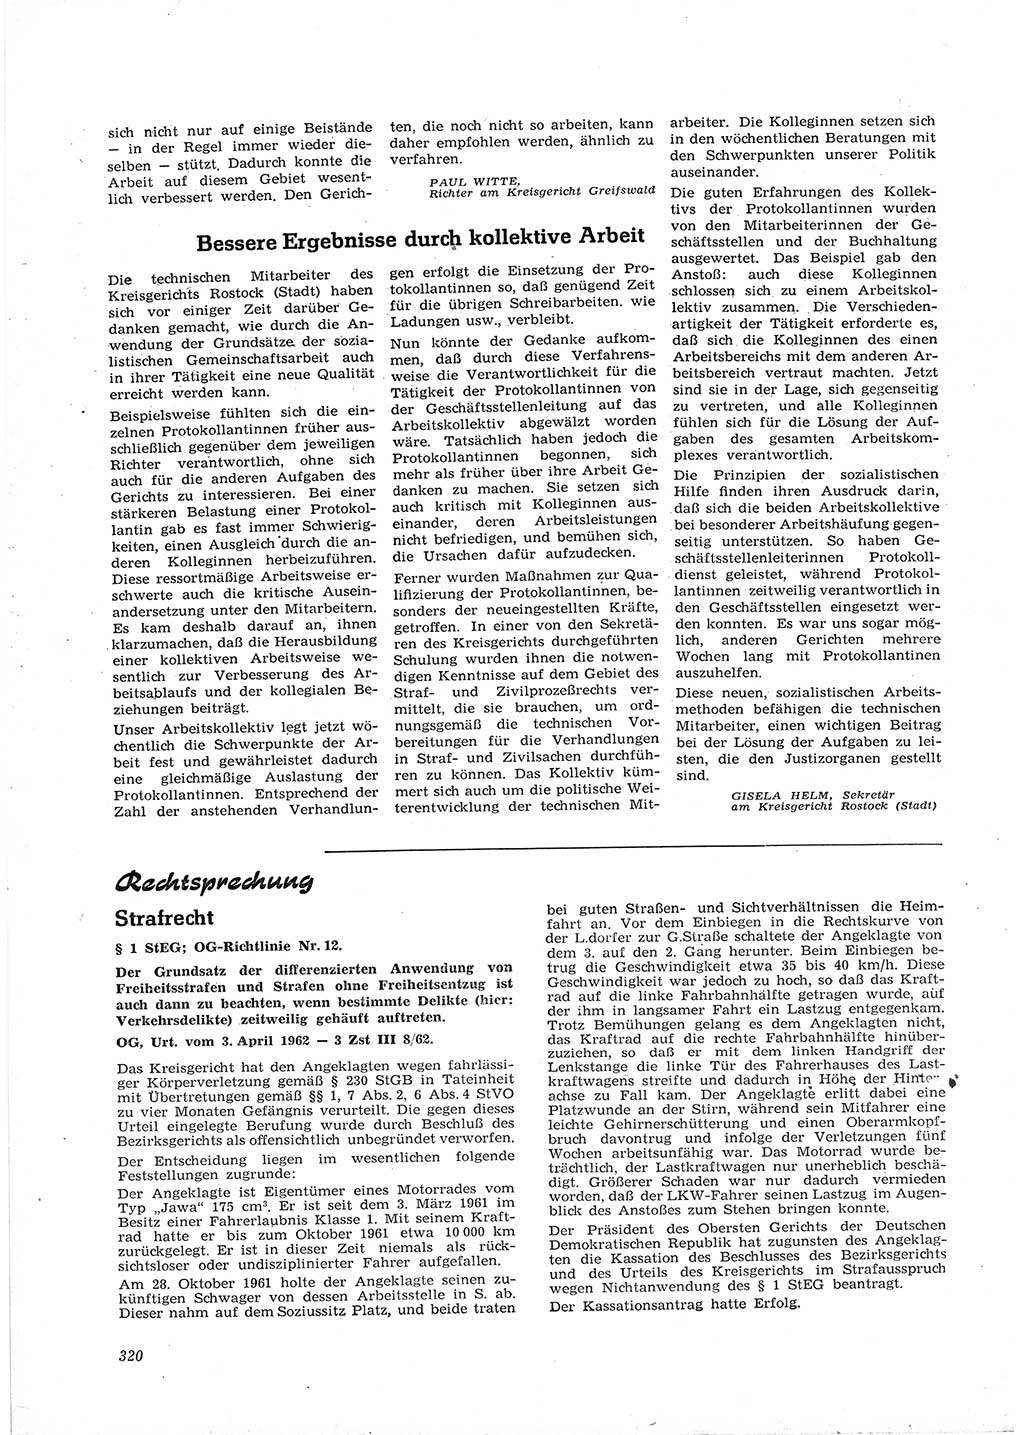 Neue Justiz (NJ), Zeitschrift für Recht und Rechtswissenschaft [Deutsche Demokratische Republik (DDR)], 16. Jahrgang 1962, Seite 320 (NJ DDR 1962, S. 320)